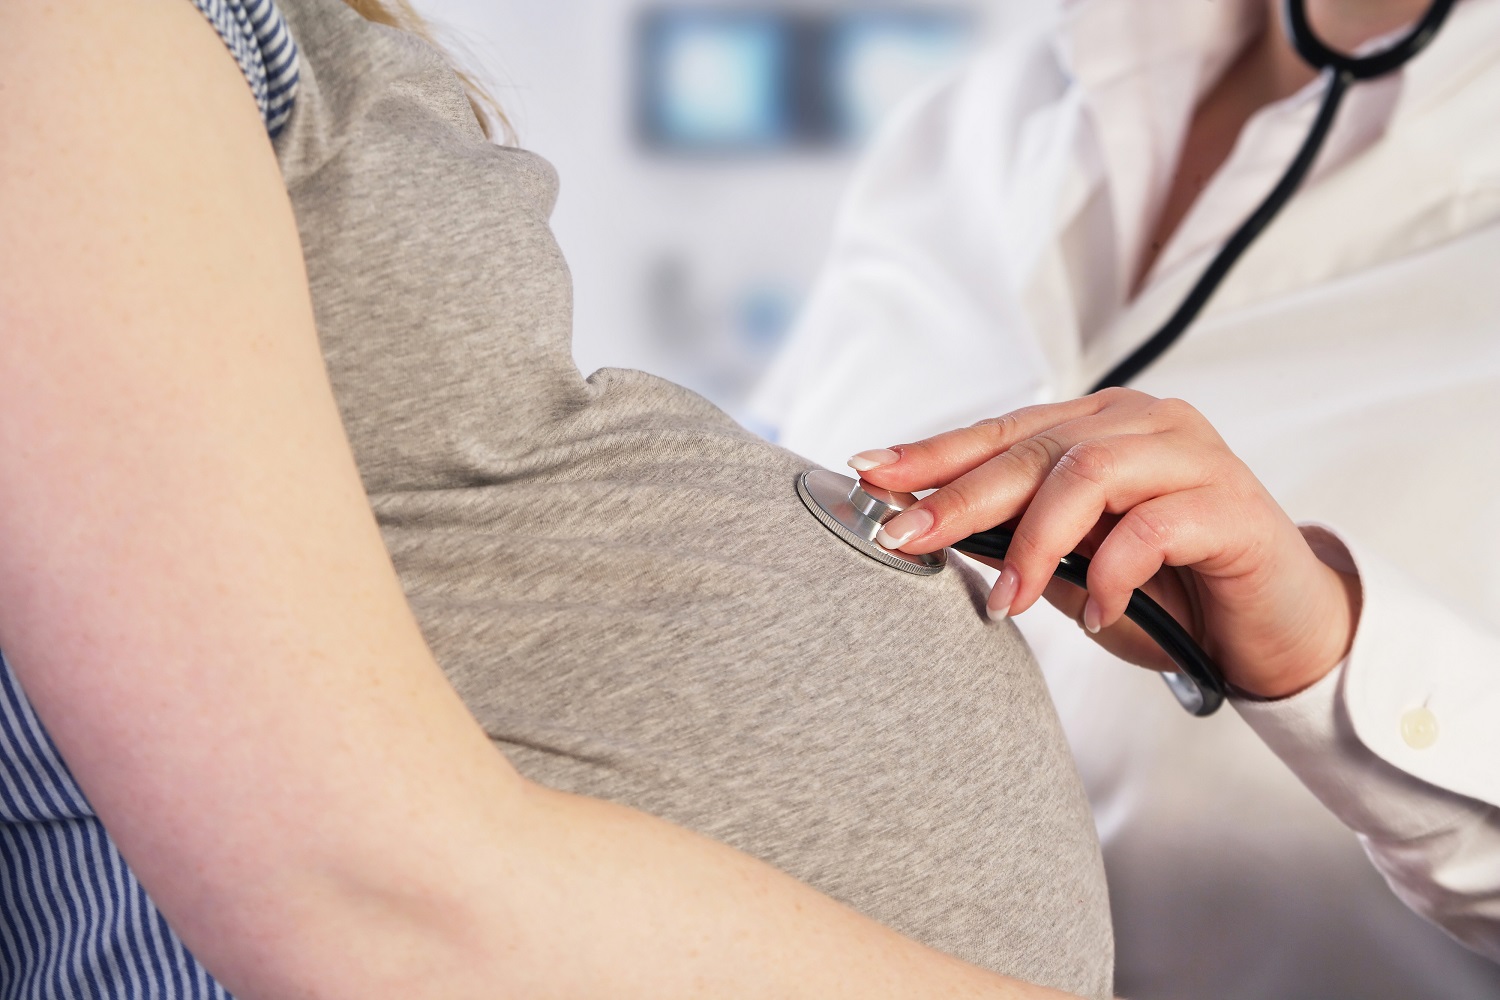 Pregnancy health and prenatal care